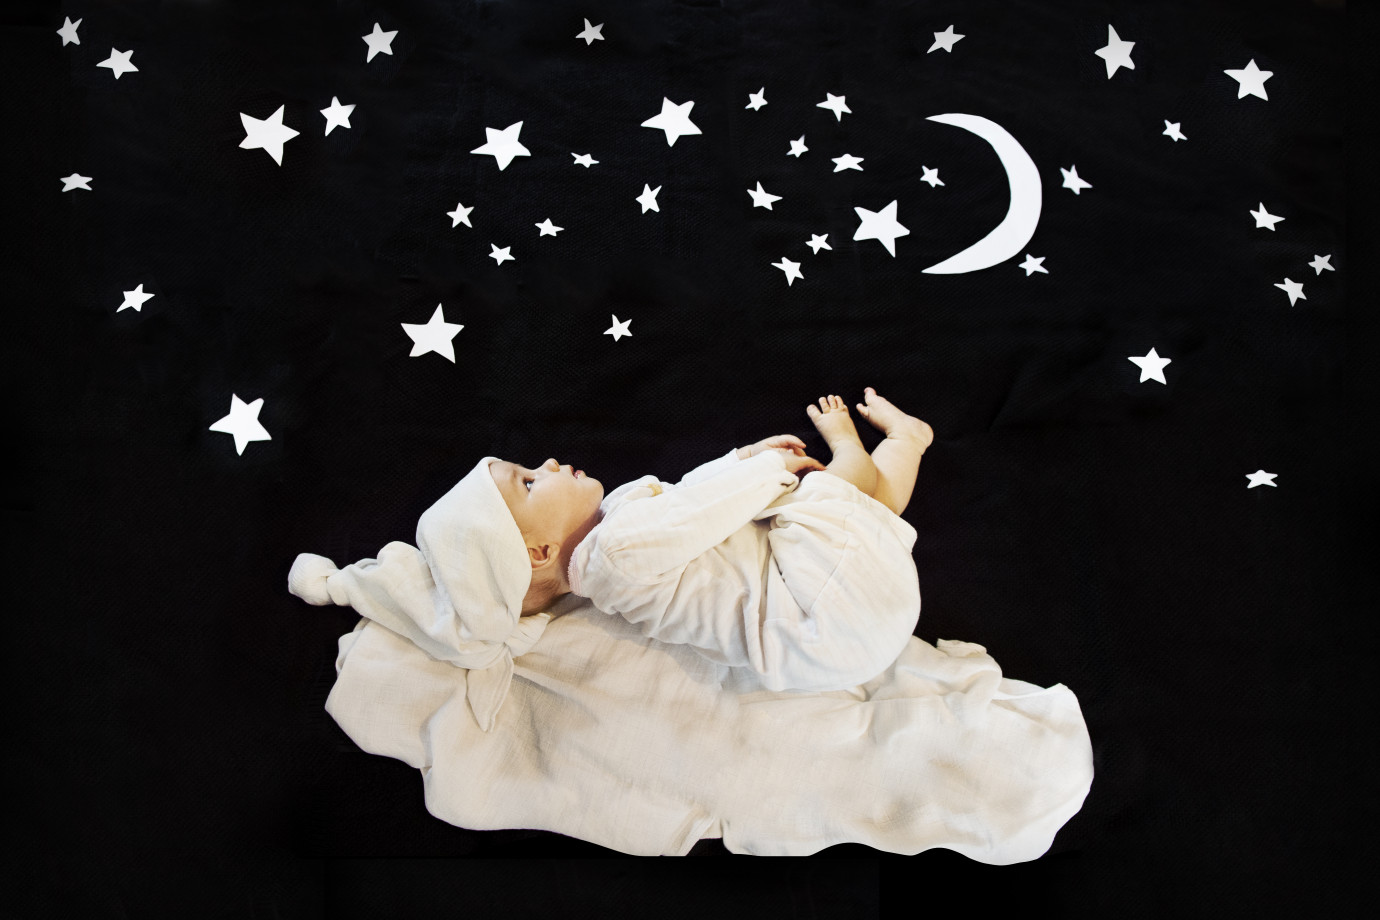 fotograf krakow magineo portfolio zdjecia noworodkow sesje noworodkowe niemowlę